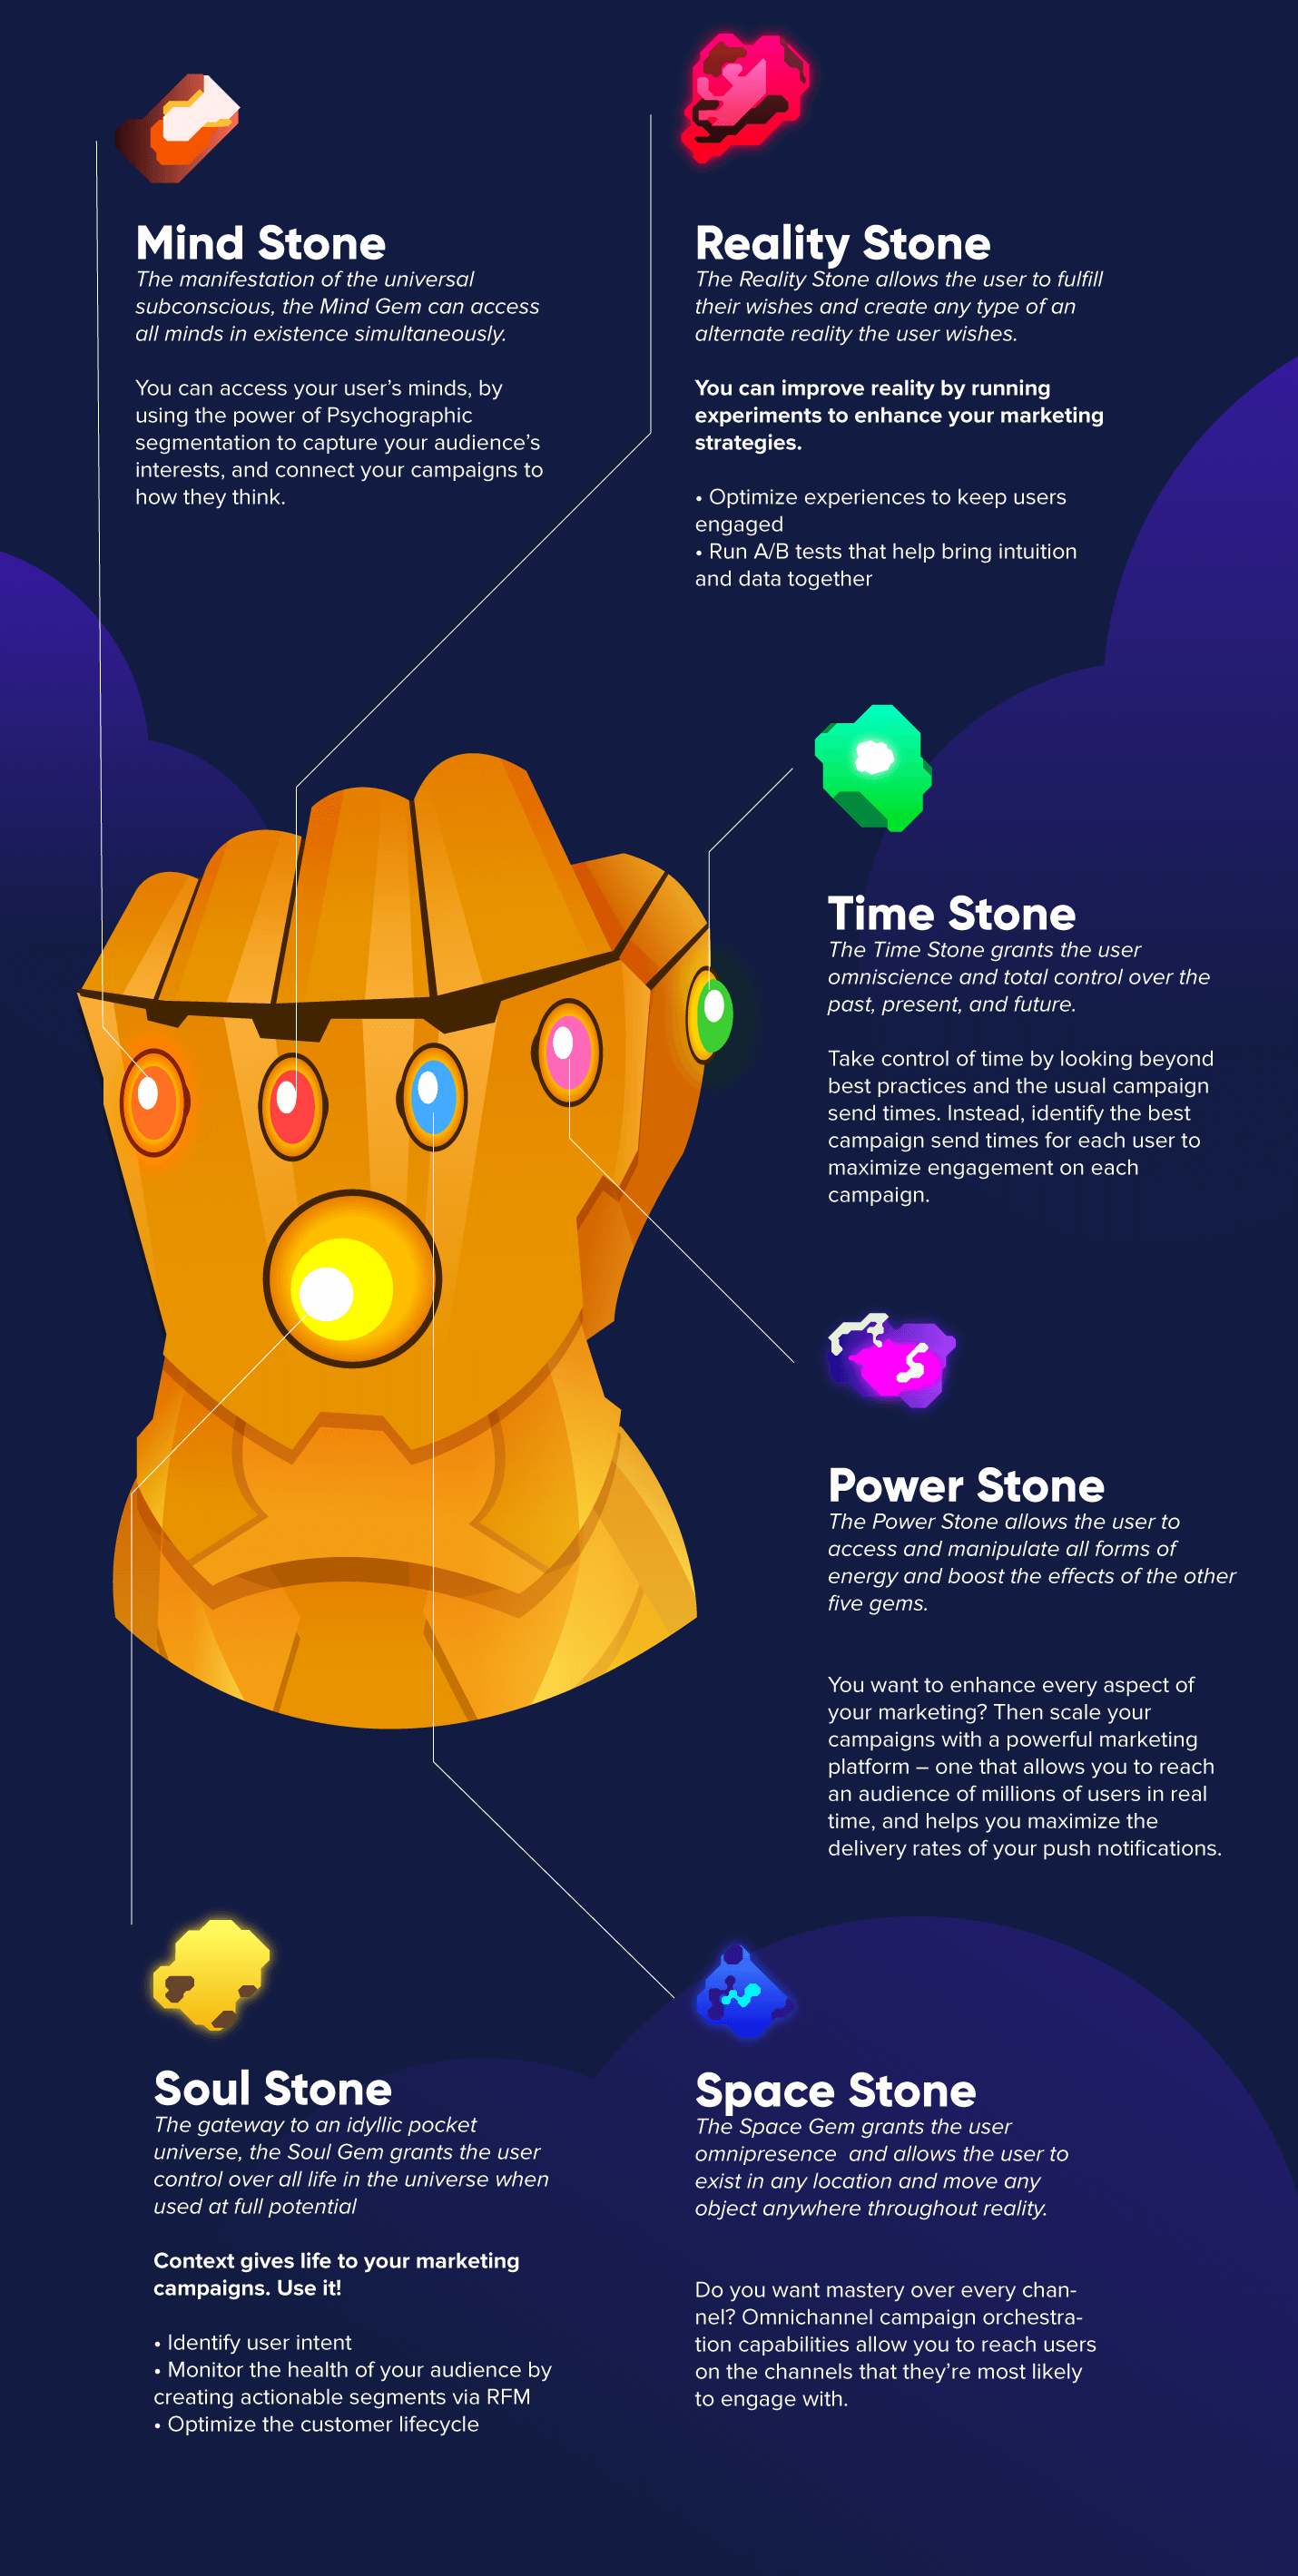 CleverTap's six infinity stones